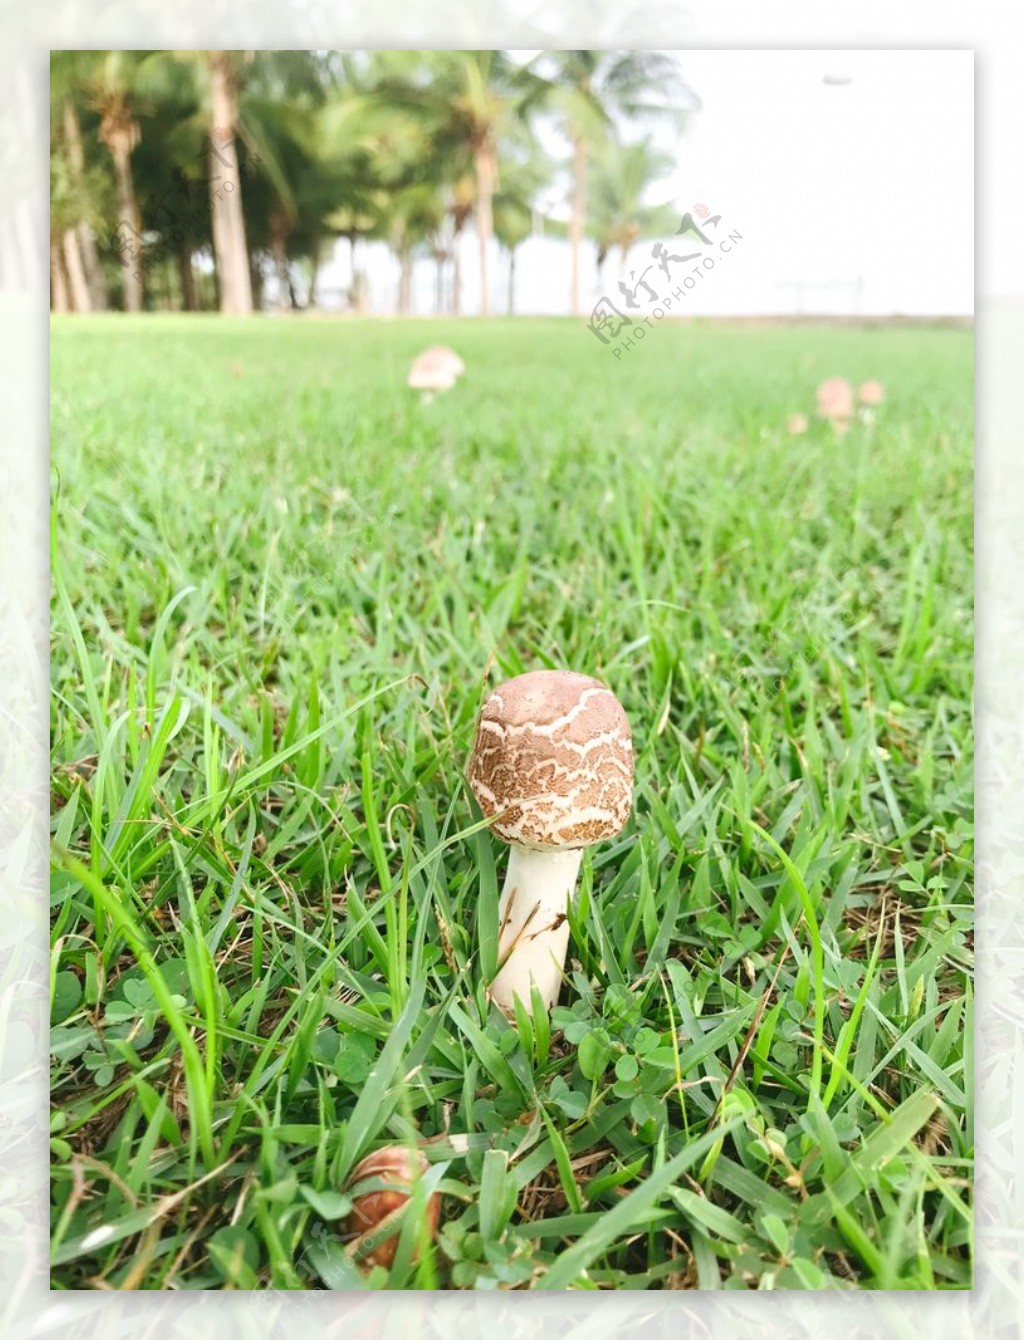 蘑菇绿色草地